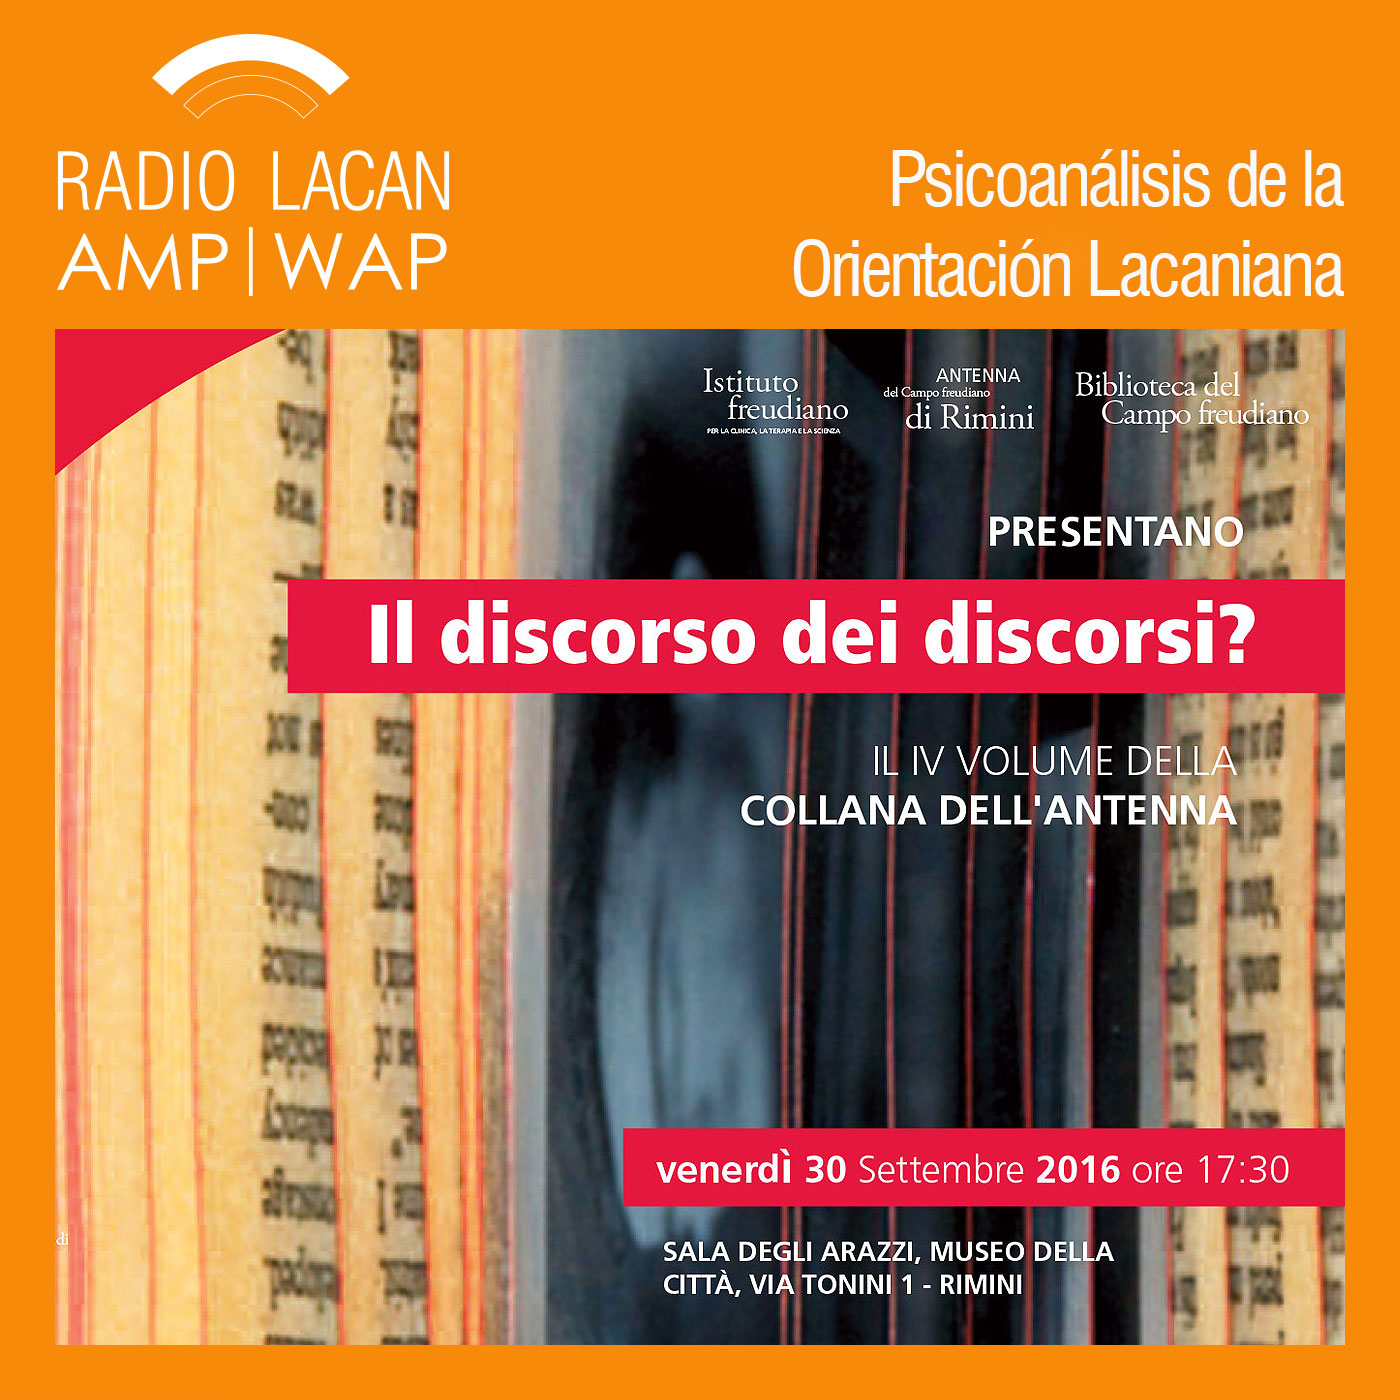 RadioLacan.com | Ecos de Rimini: Il discorso dei discorsi?. A propósito del Seminario XVIIl de Jacques Lacan